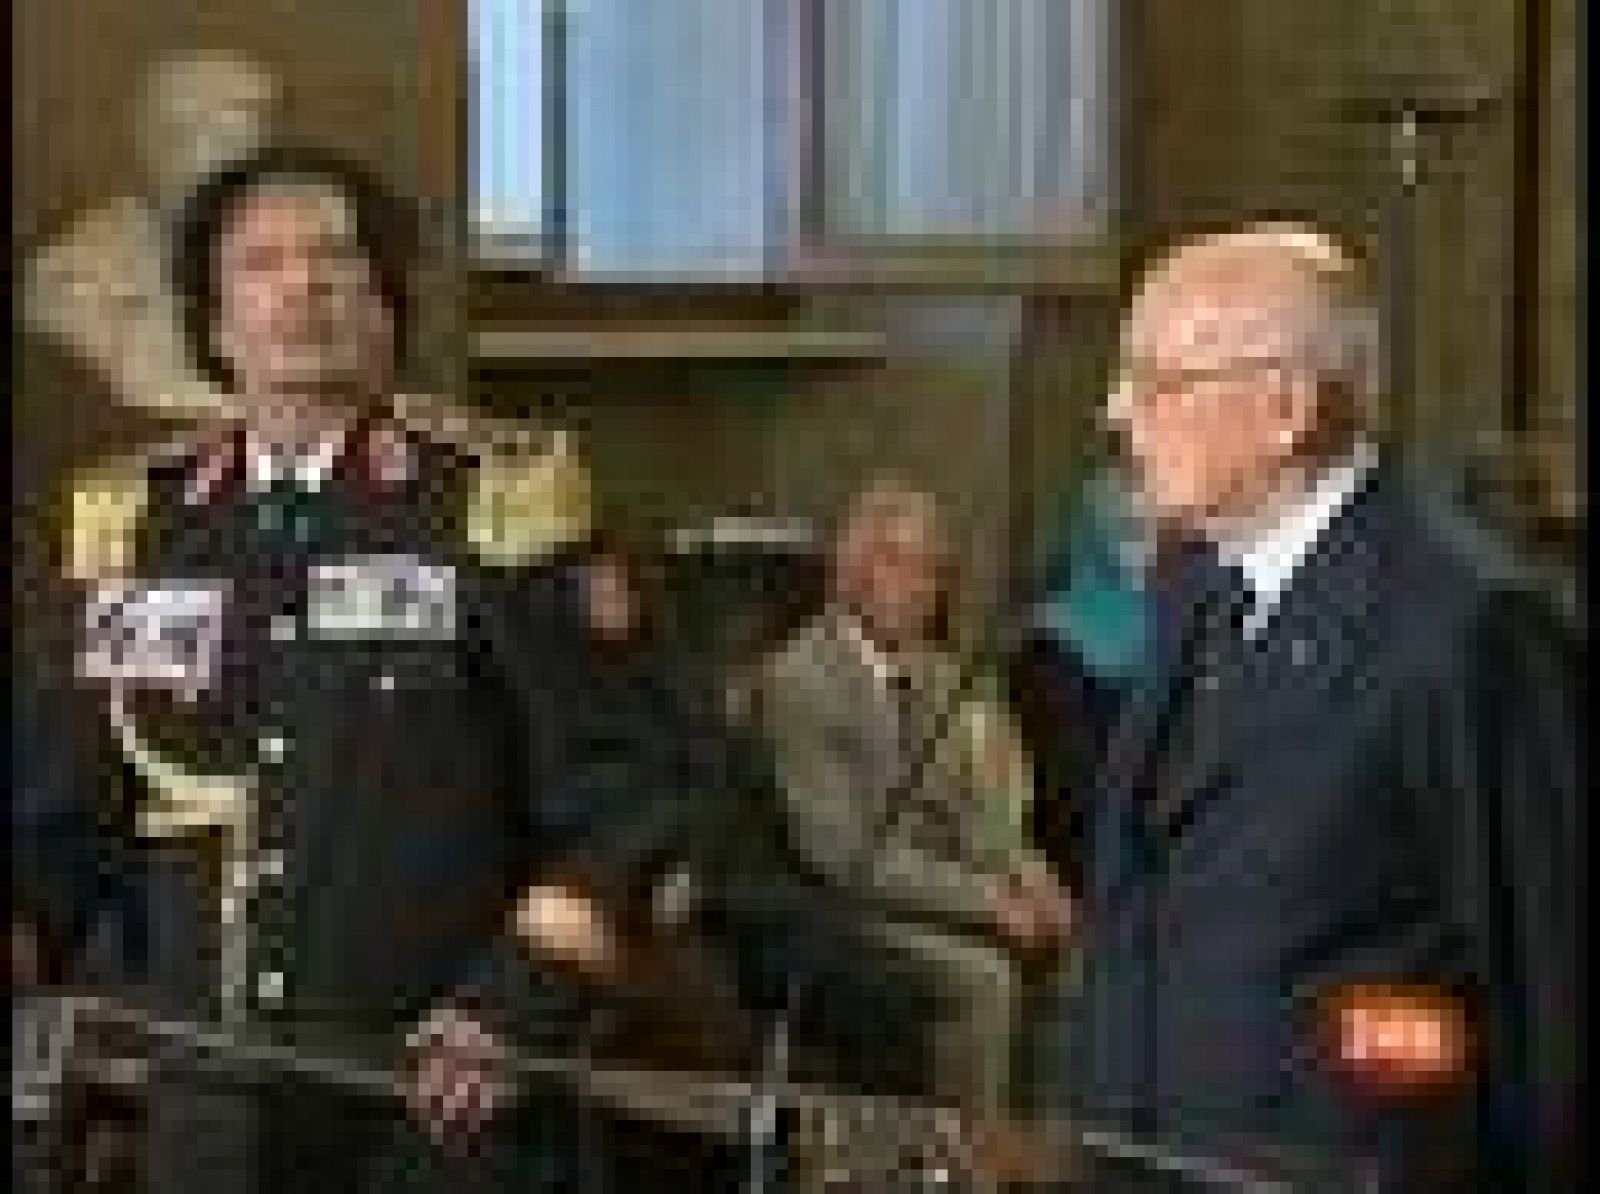  El líder libio, Muamar al Gadafi, ha llegado a Roma en su primera visita a Italia, país del que Libia fue colonia, en un viaje que ha generado las críticas de la oposición y de los defensores de los derechos humanos.